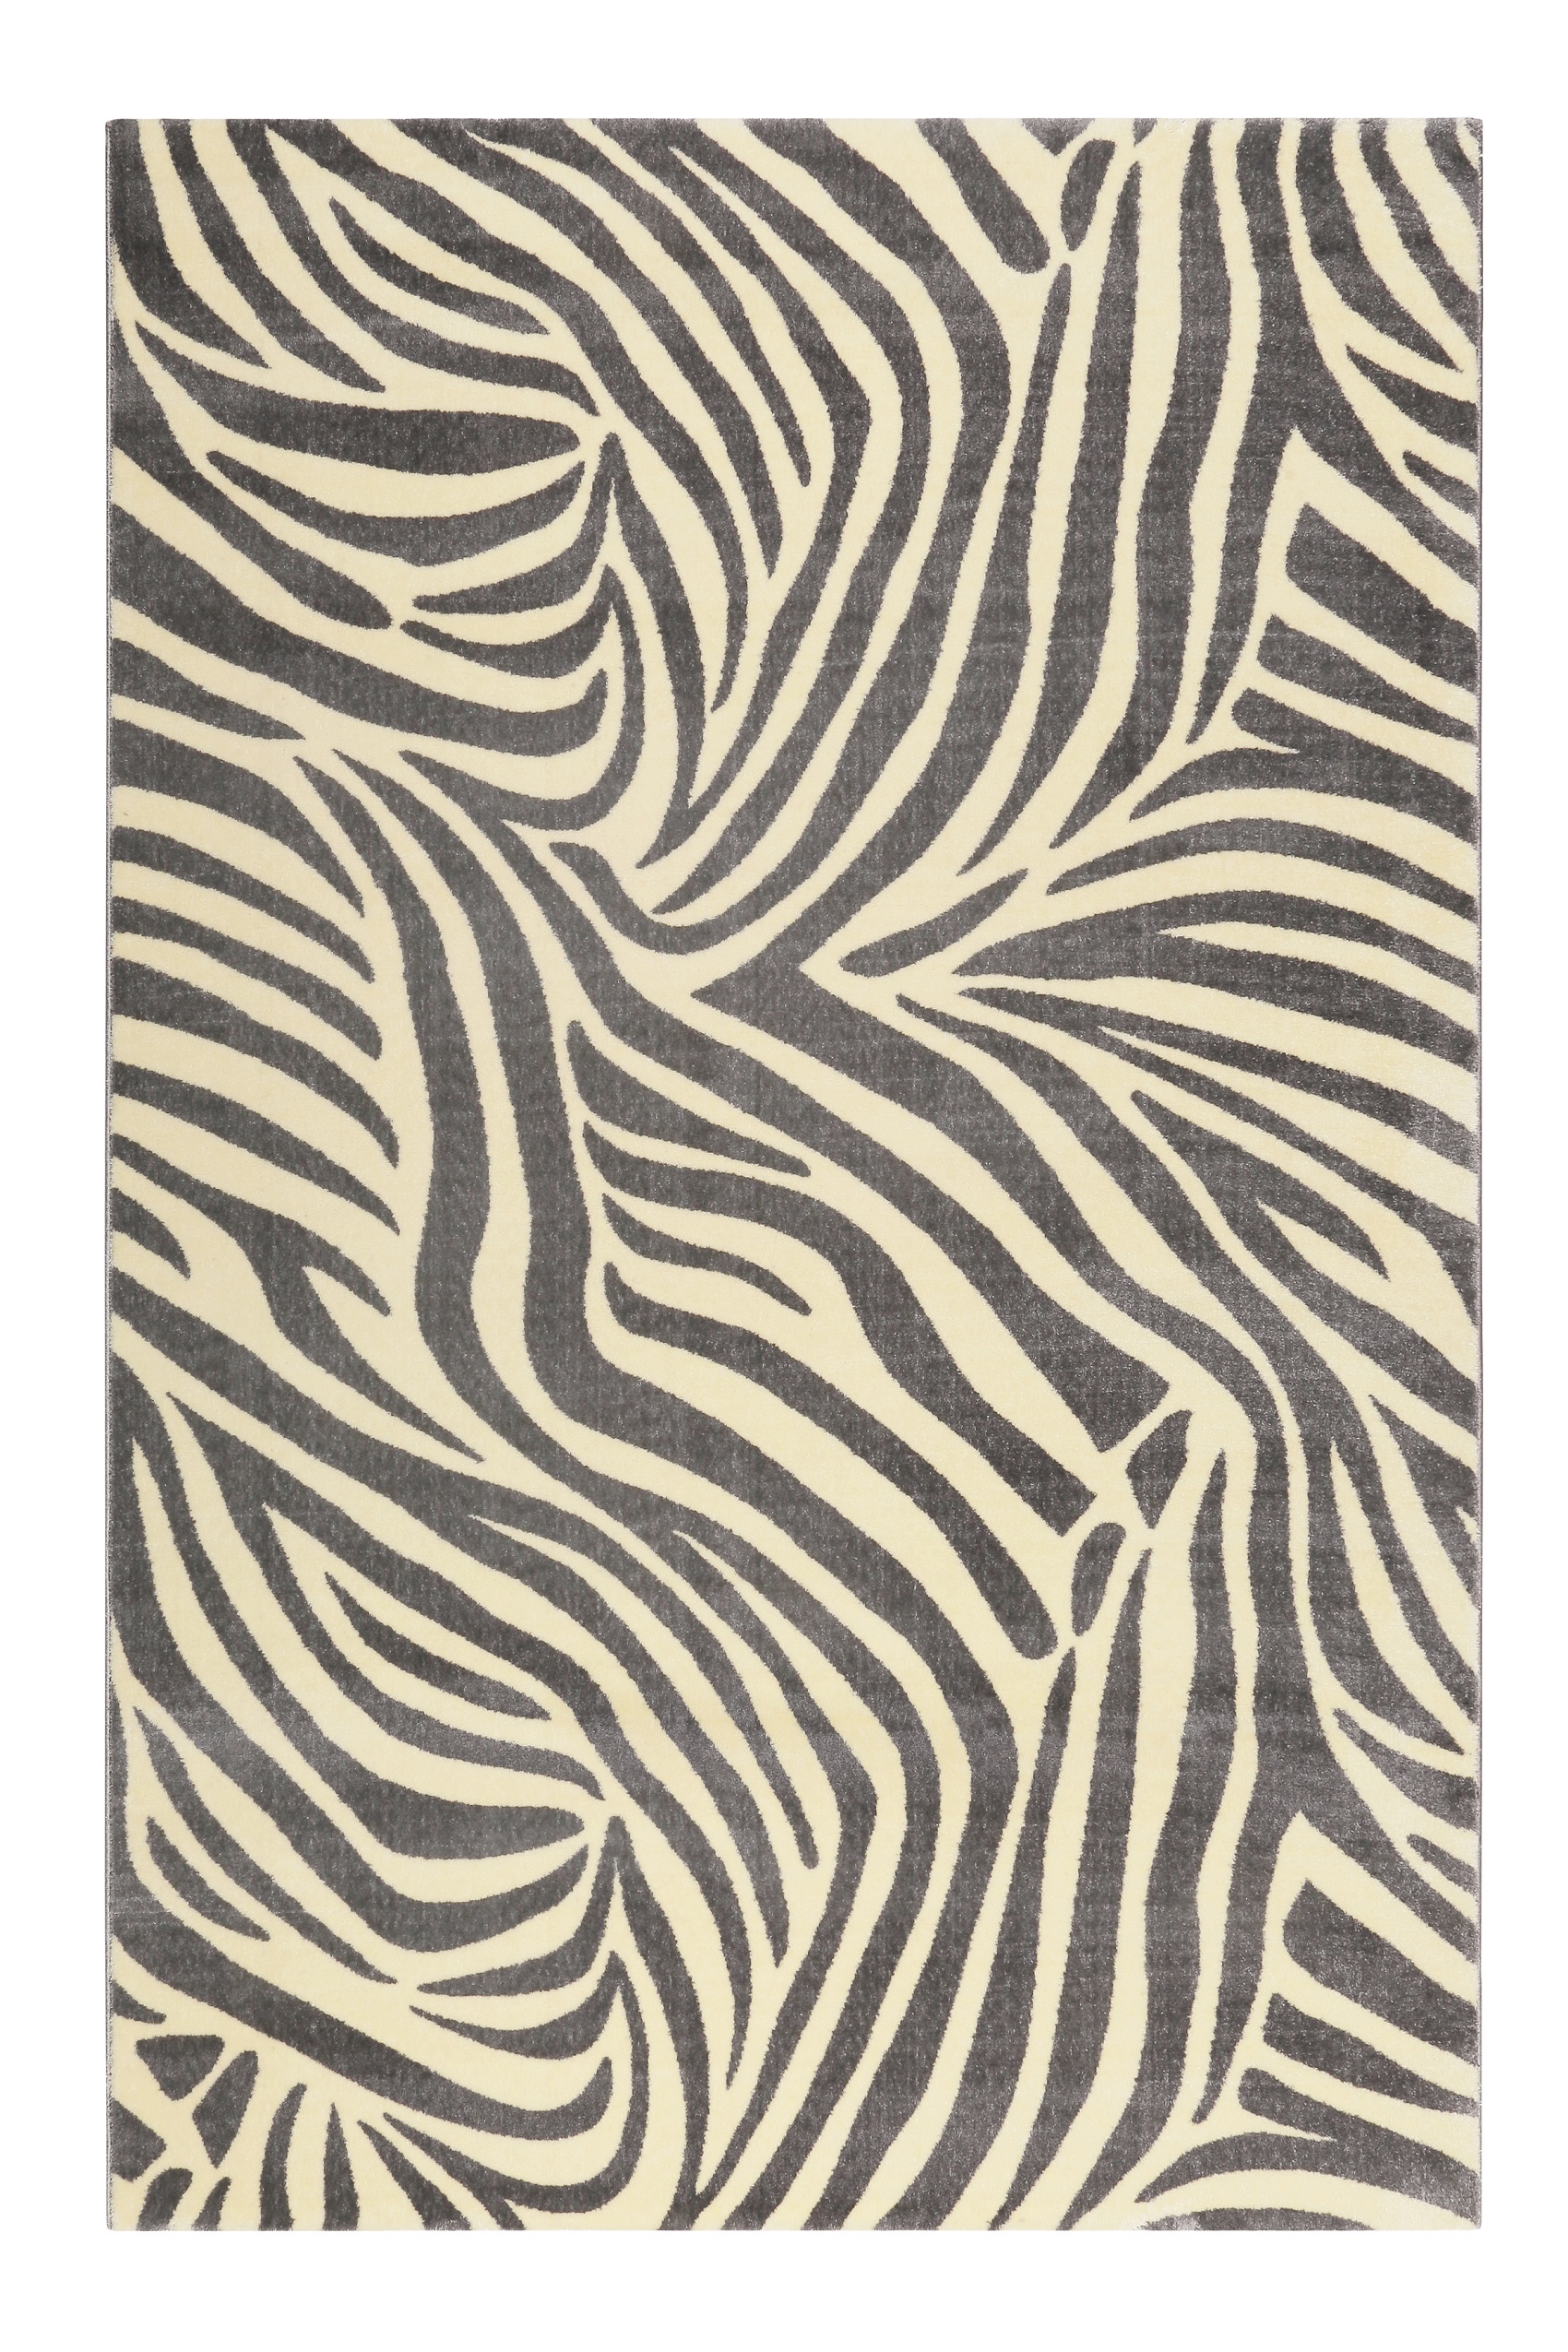 WECONhome Kurzflor Teppich » Zebra « grau creme - Ansicht 1